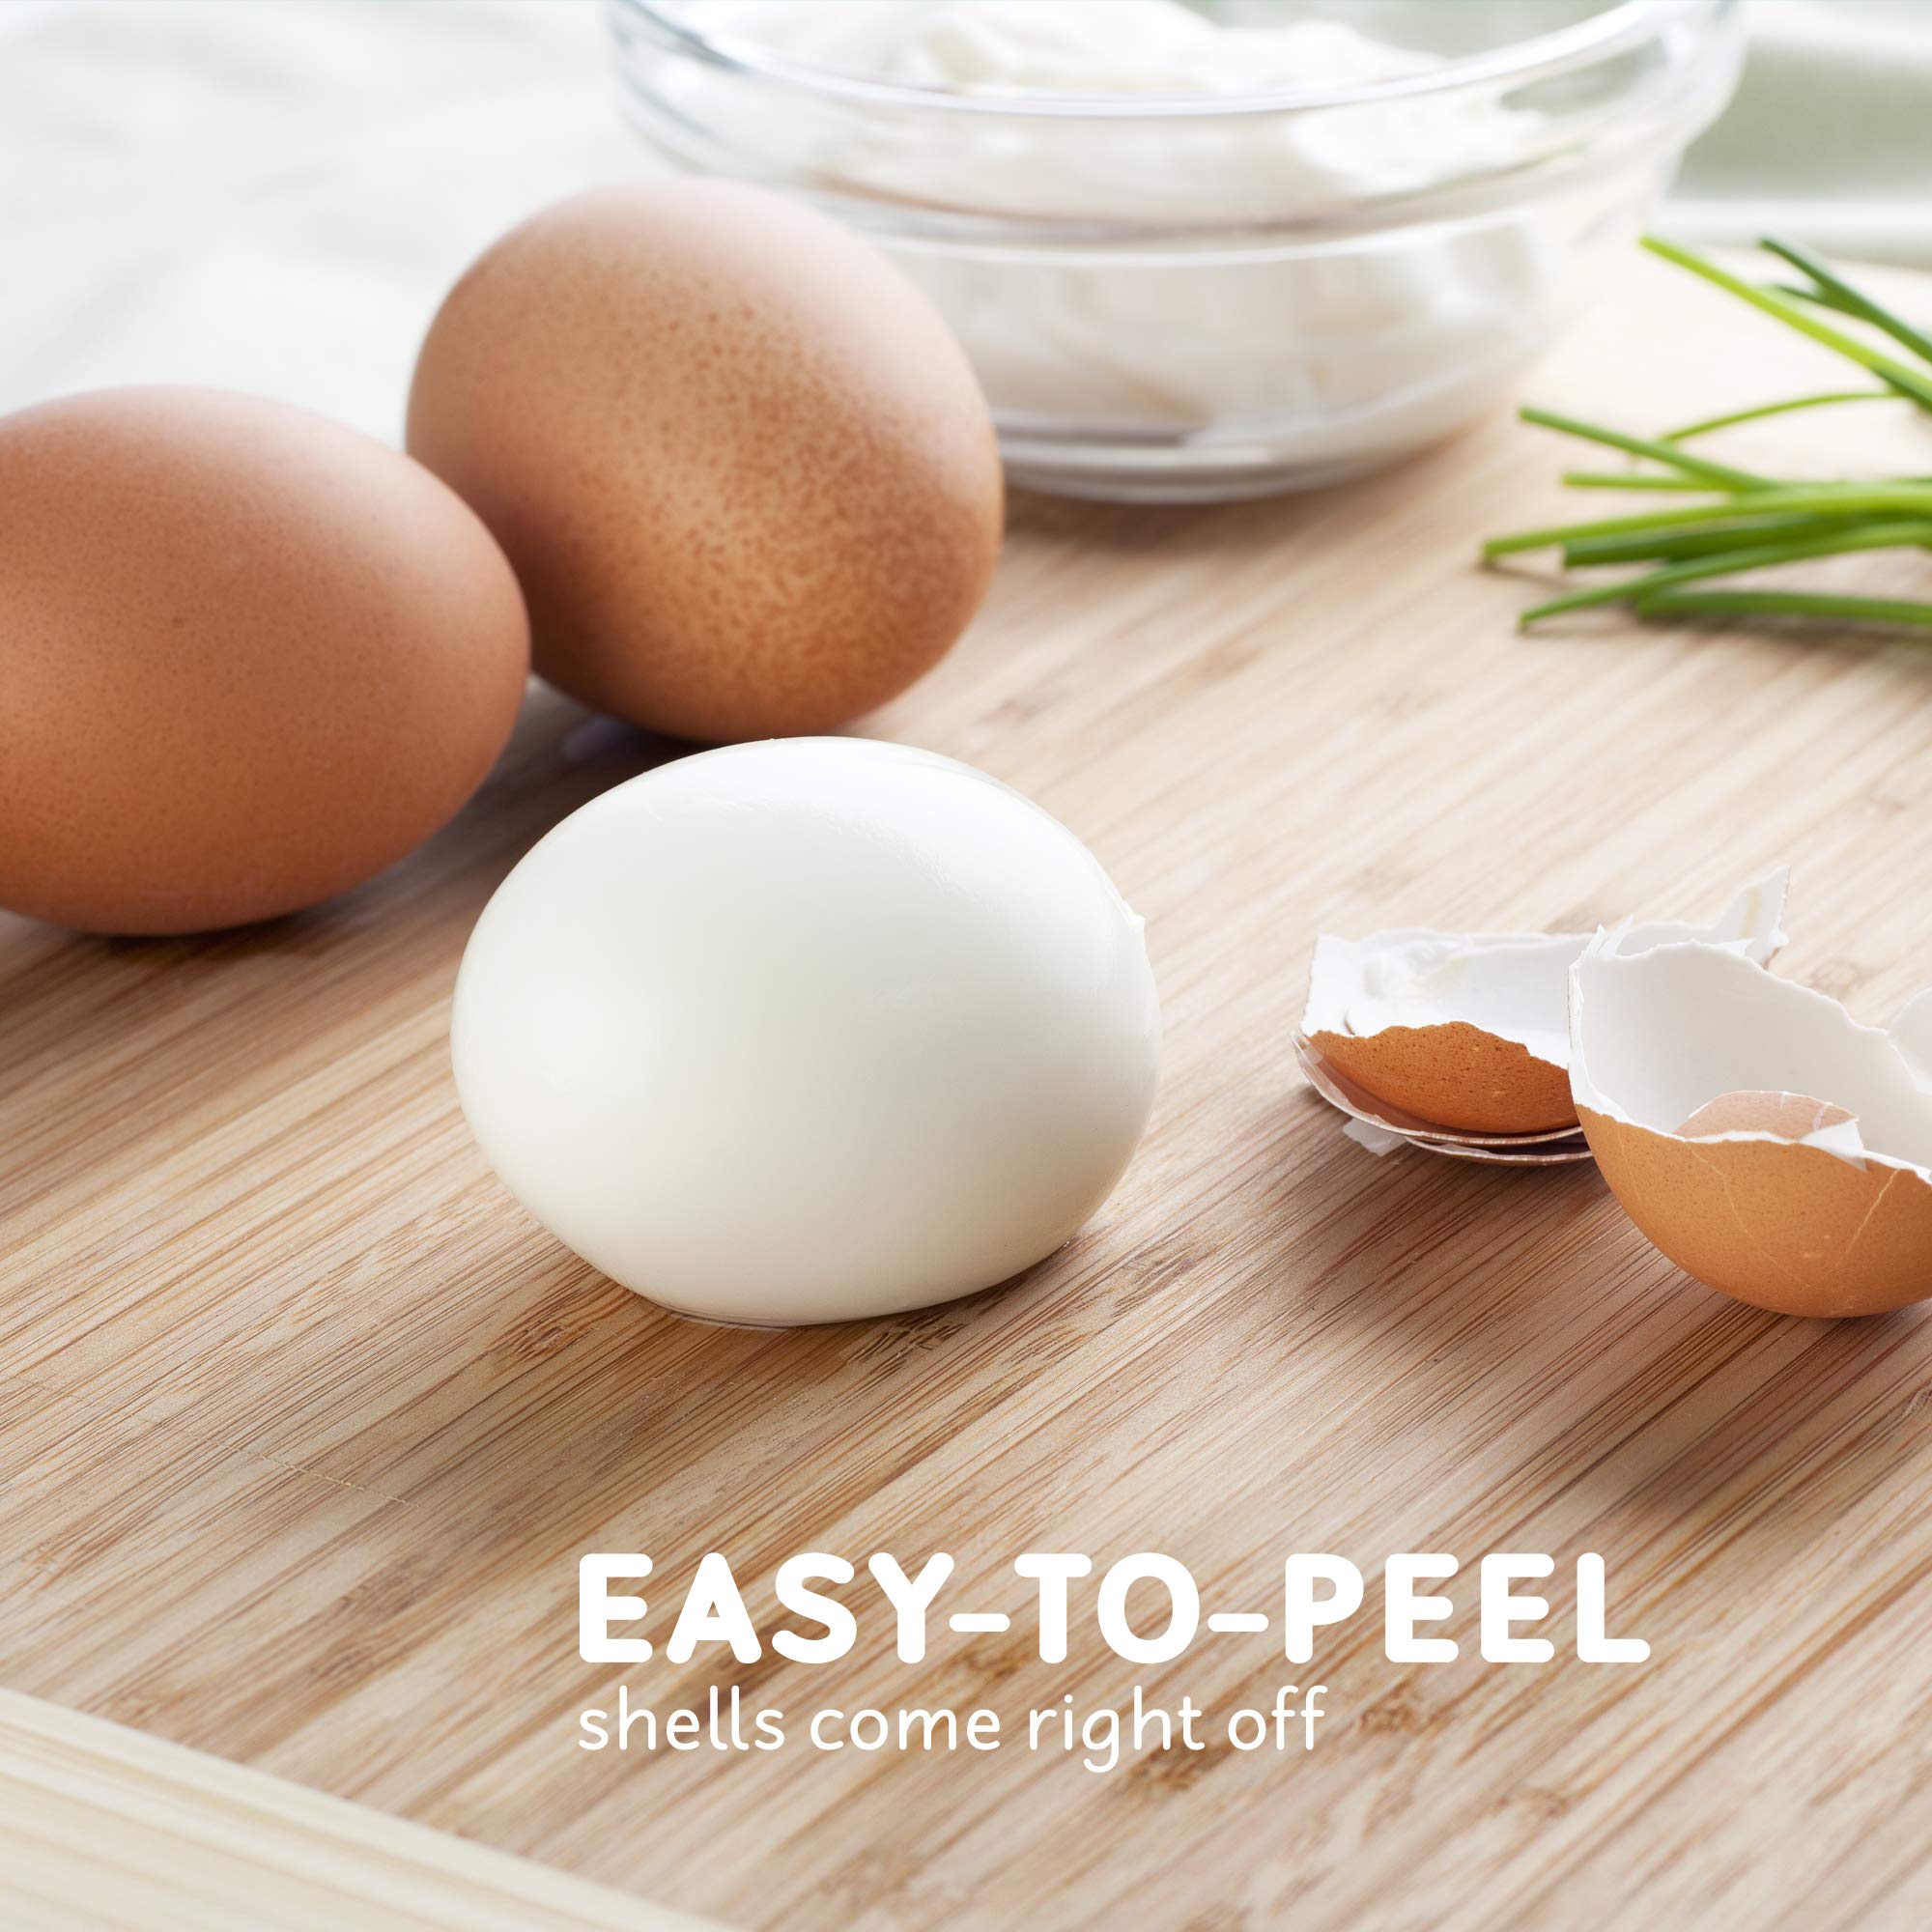 Elite Gourmet EGC-007 Rapid Egg Cooker, 7 Easy-To-Peel, Hard, Medium, Soft Boiled Eggs, Poacher, Omelet Maker, Auto Shut-Off, Alarm, 16-Recipe Booklet, White